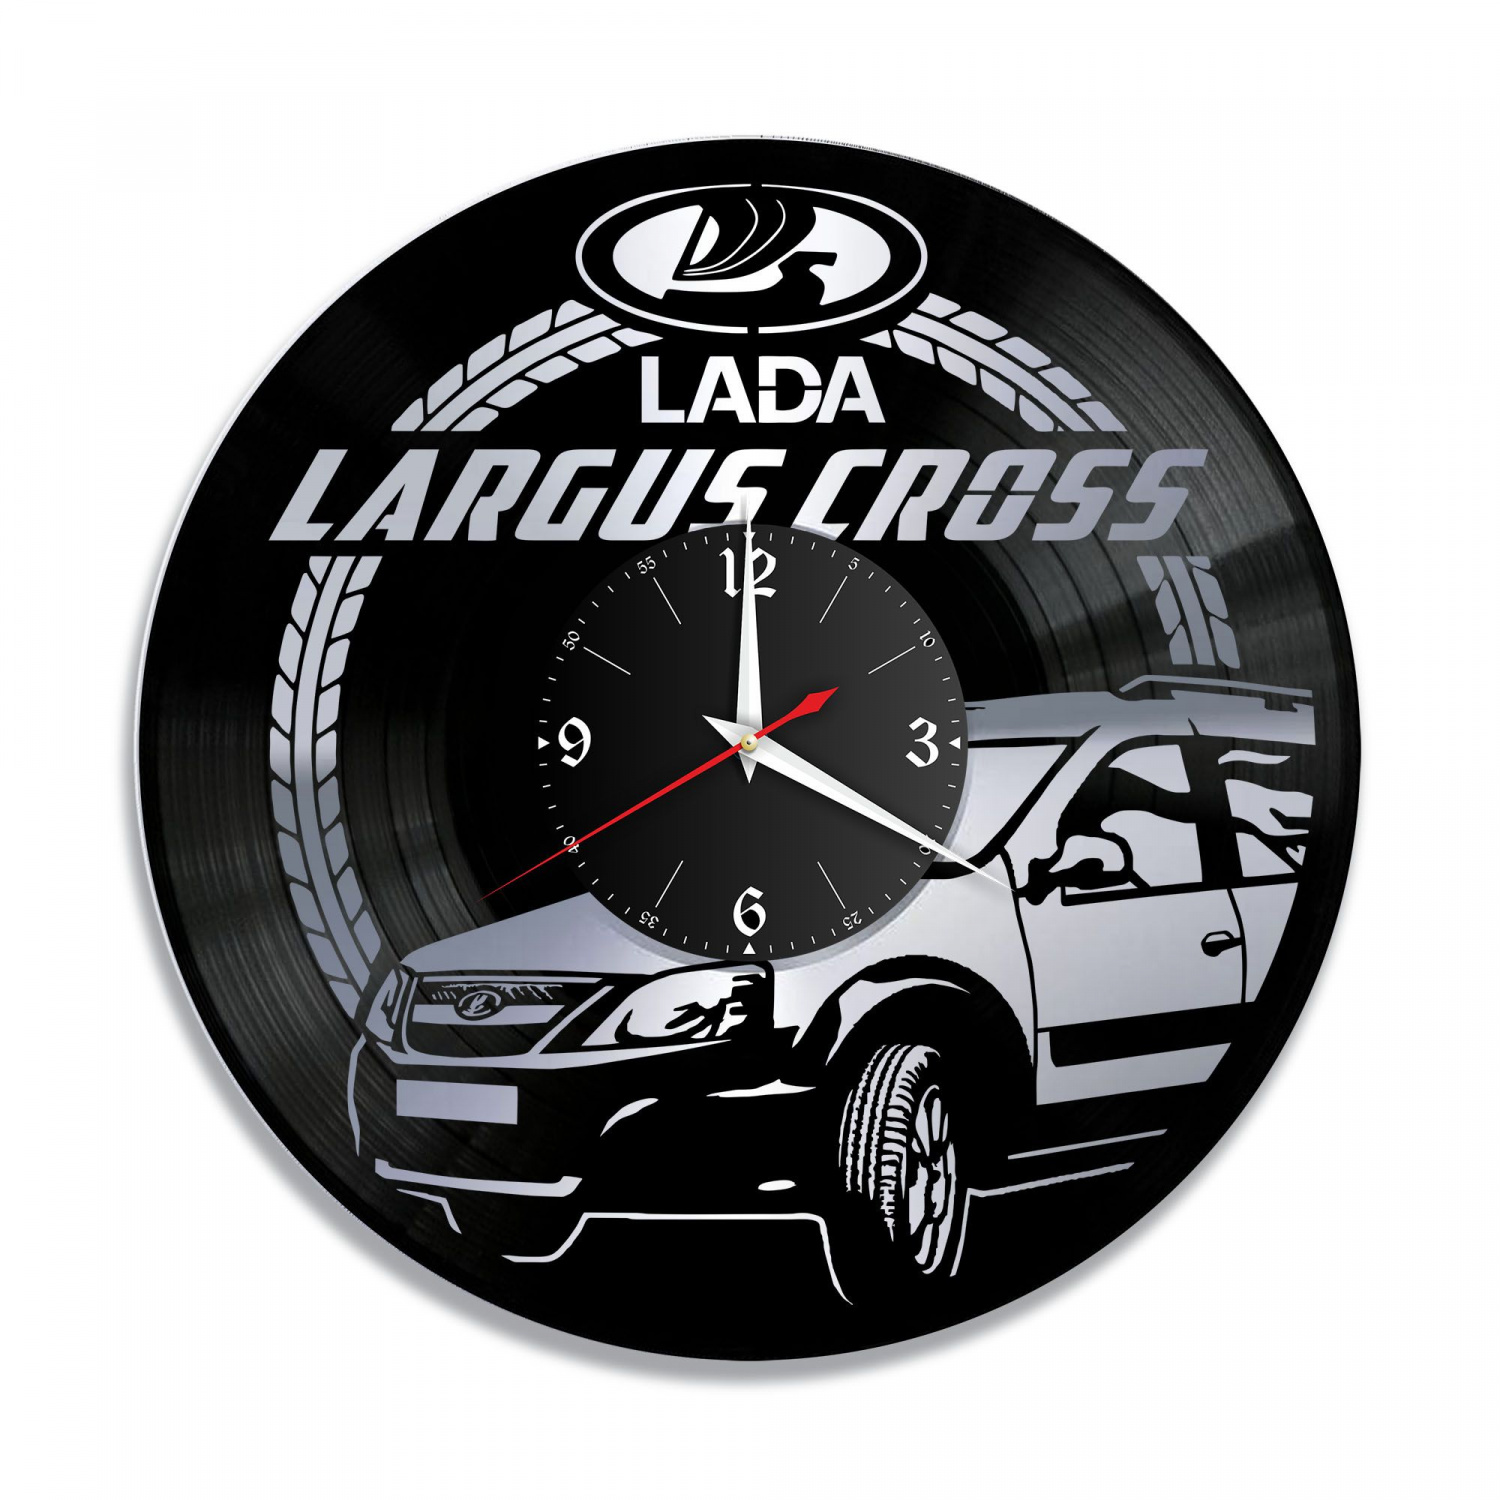 Часы настенные "Lada Largus Cross, серебро" из винила, №2 VC-10418-2